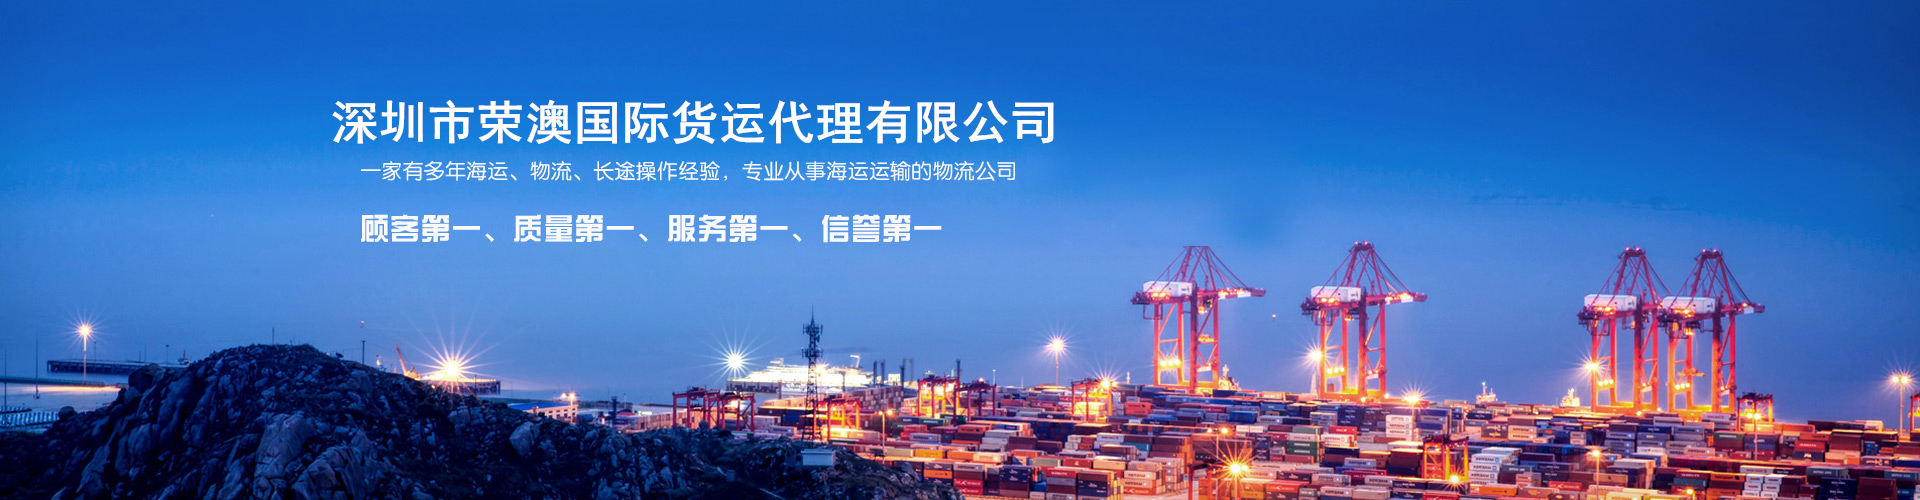 宁波食品海运澳洲强烈推荐 深圳市荣澳国际货运代理有限公司